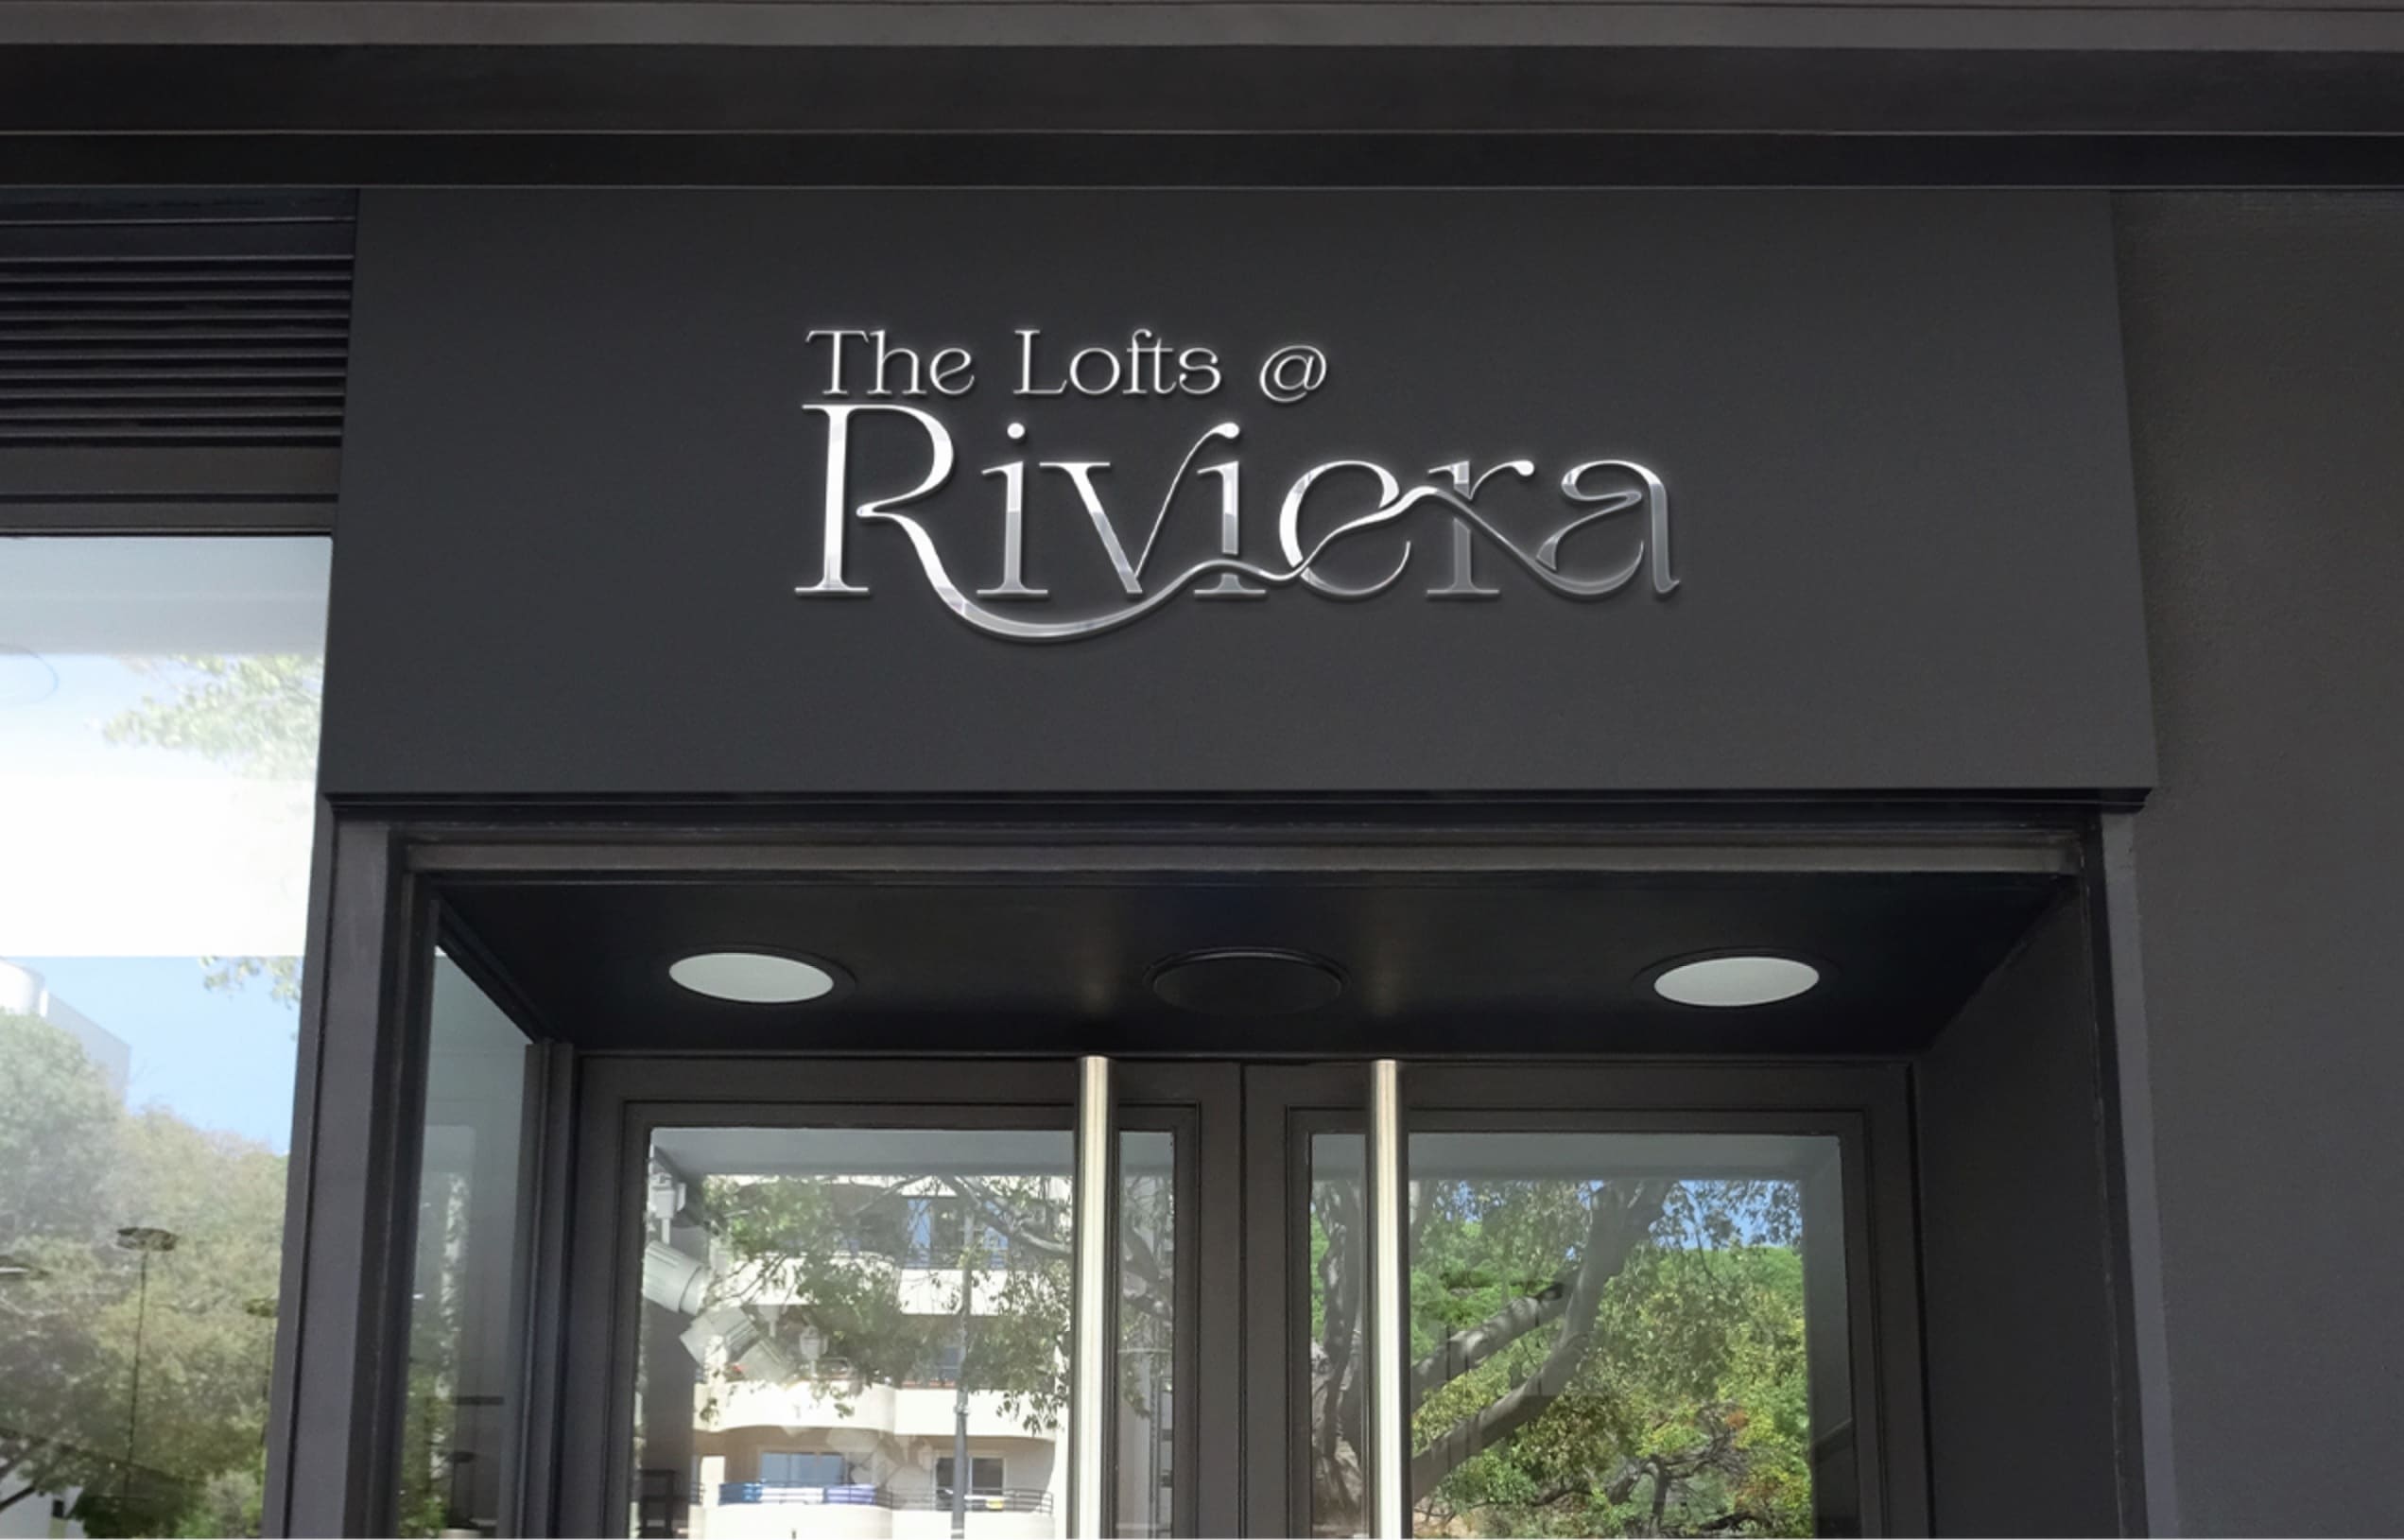 The Lofts at Riviera